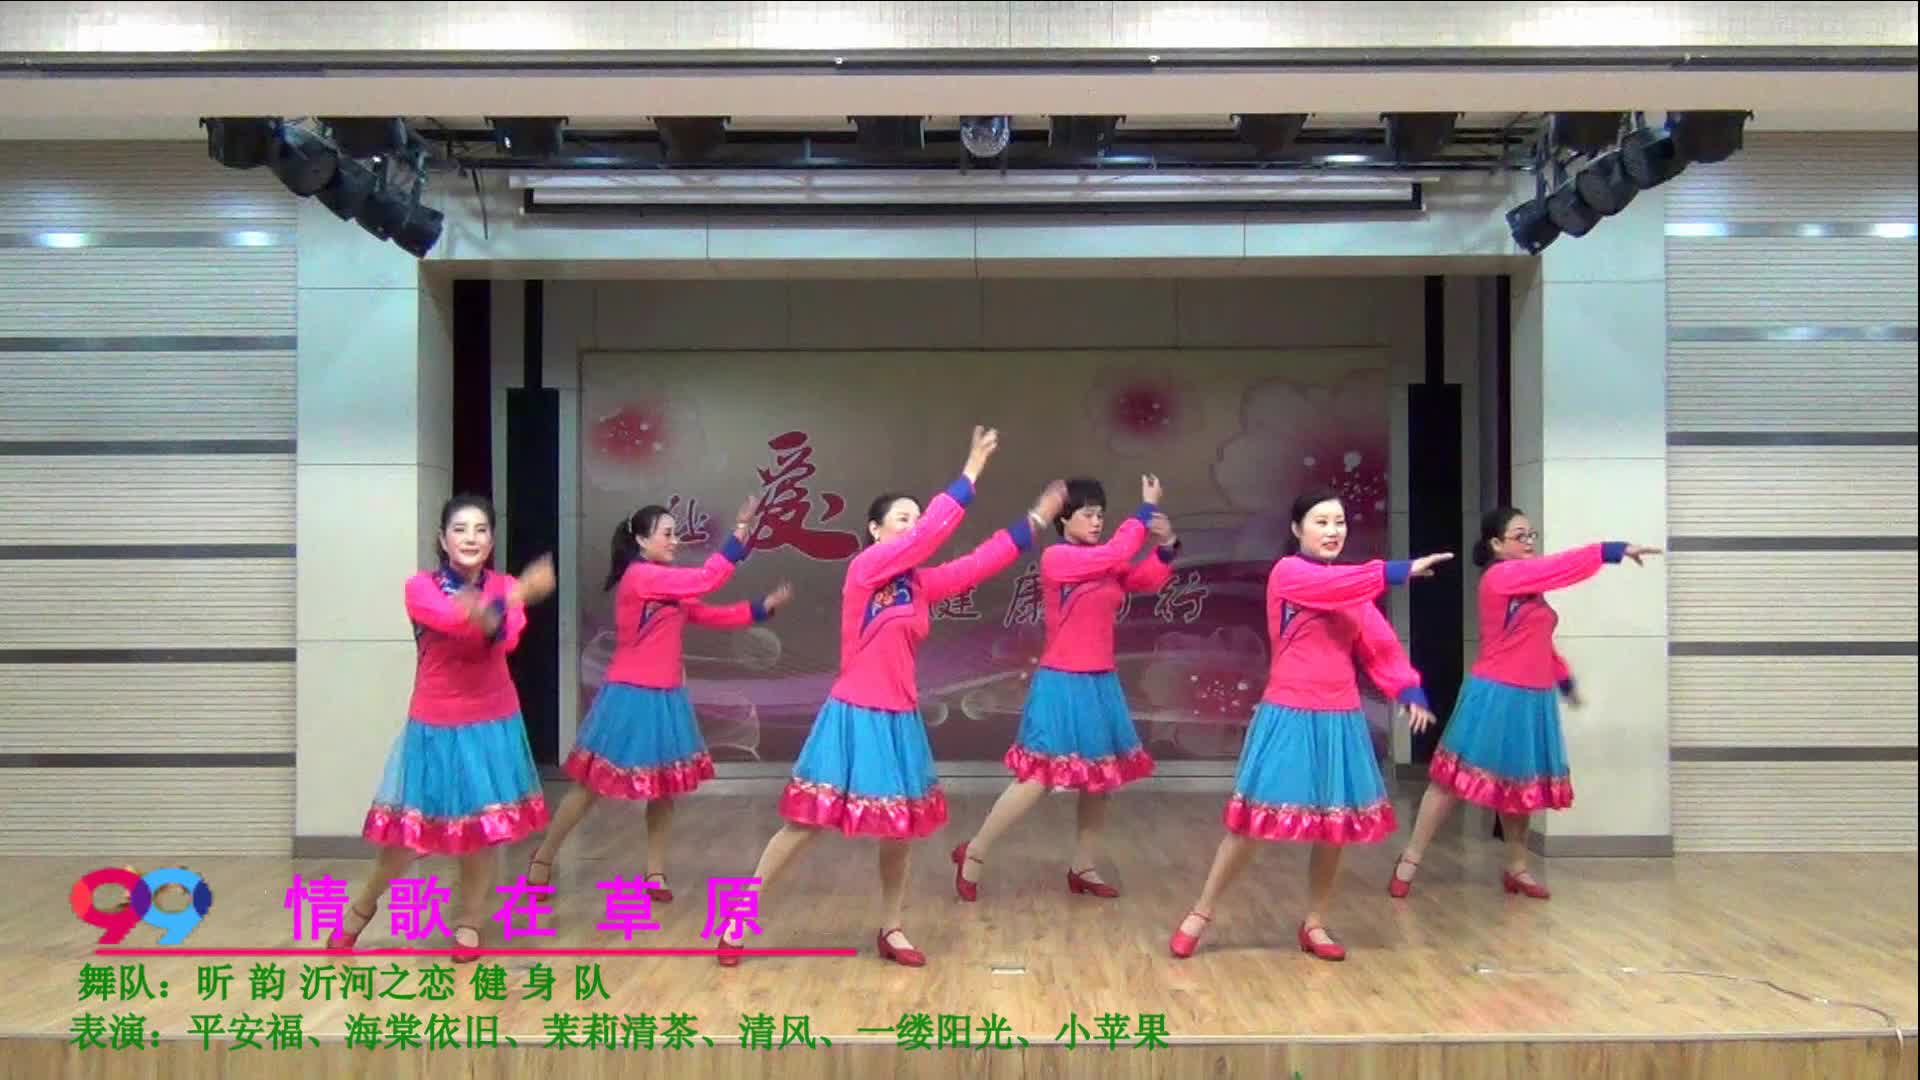 昕韵沂河之恋广场舞 情歌在草原舞蹈视频 正反面演示分解教学